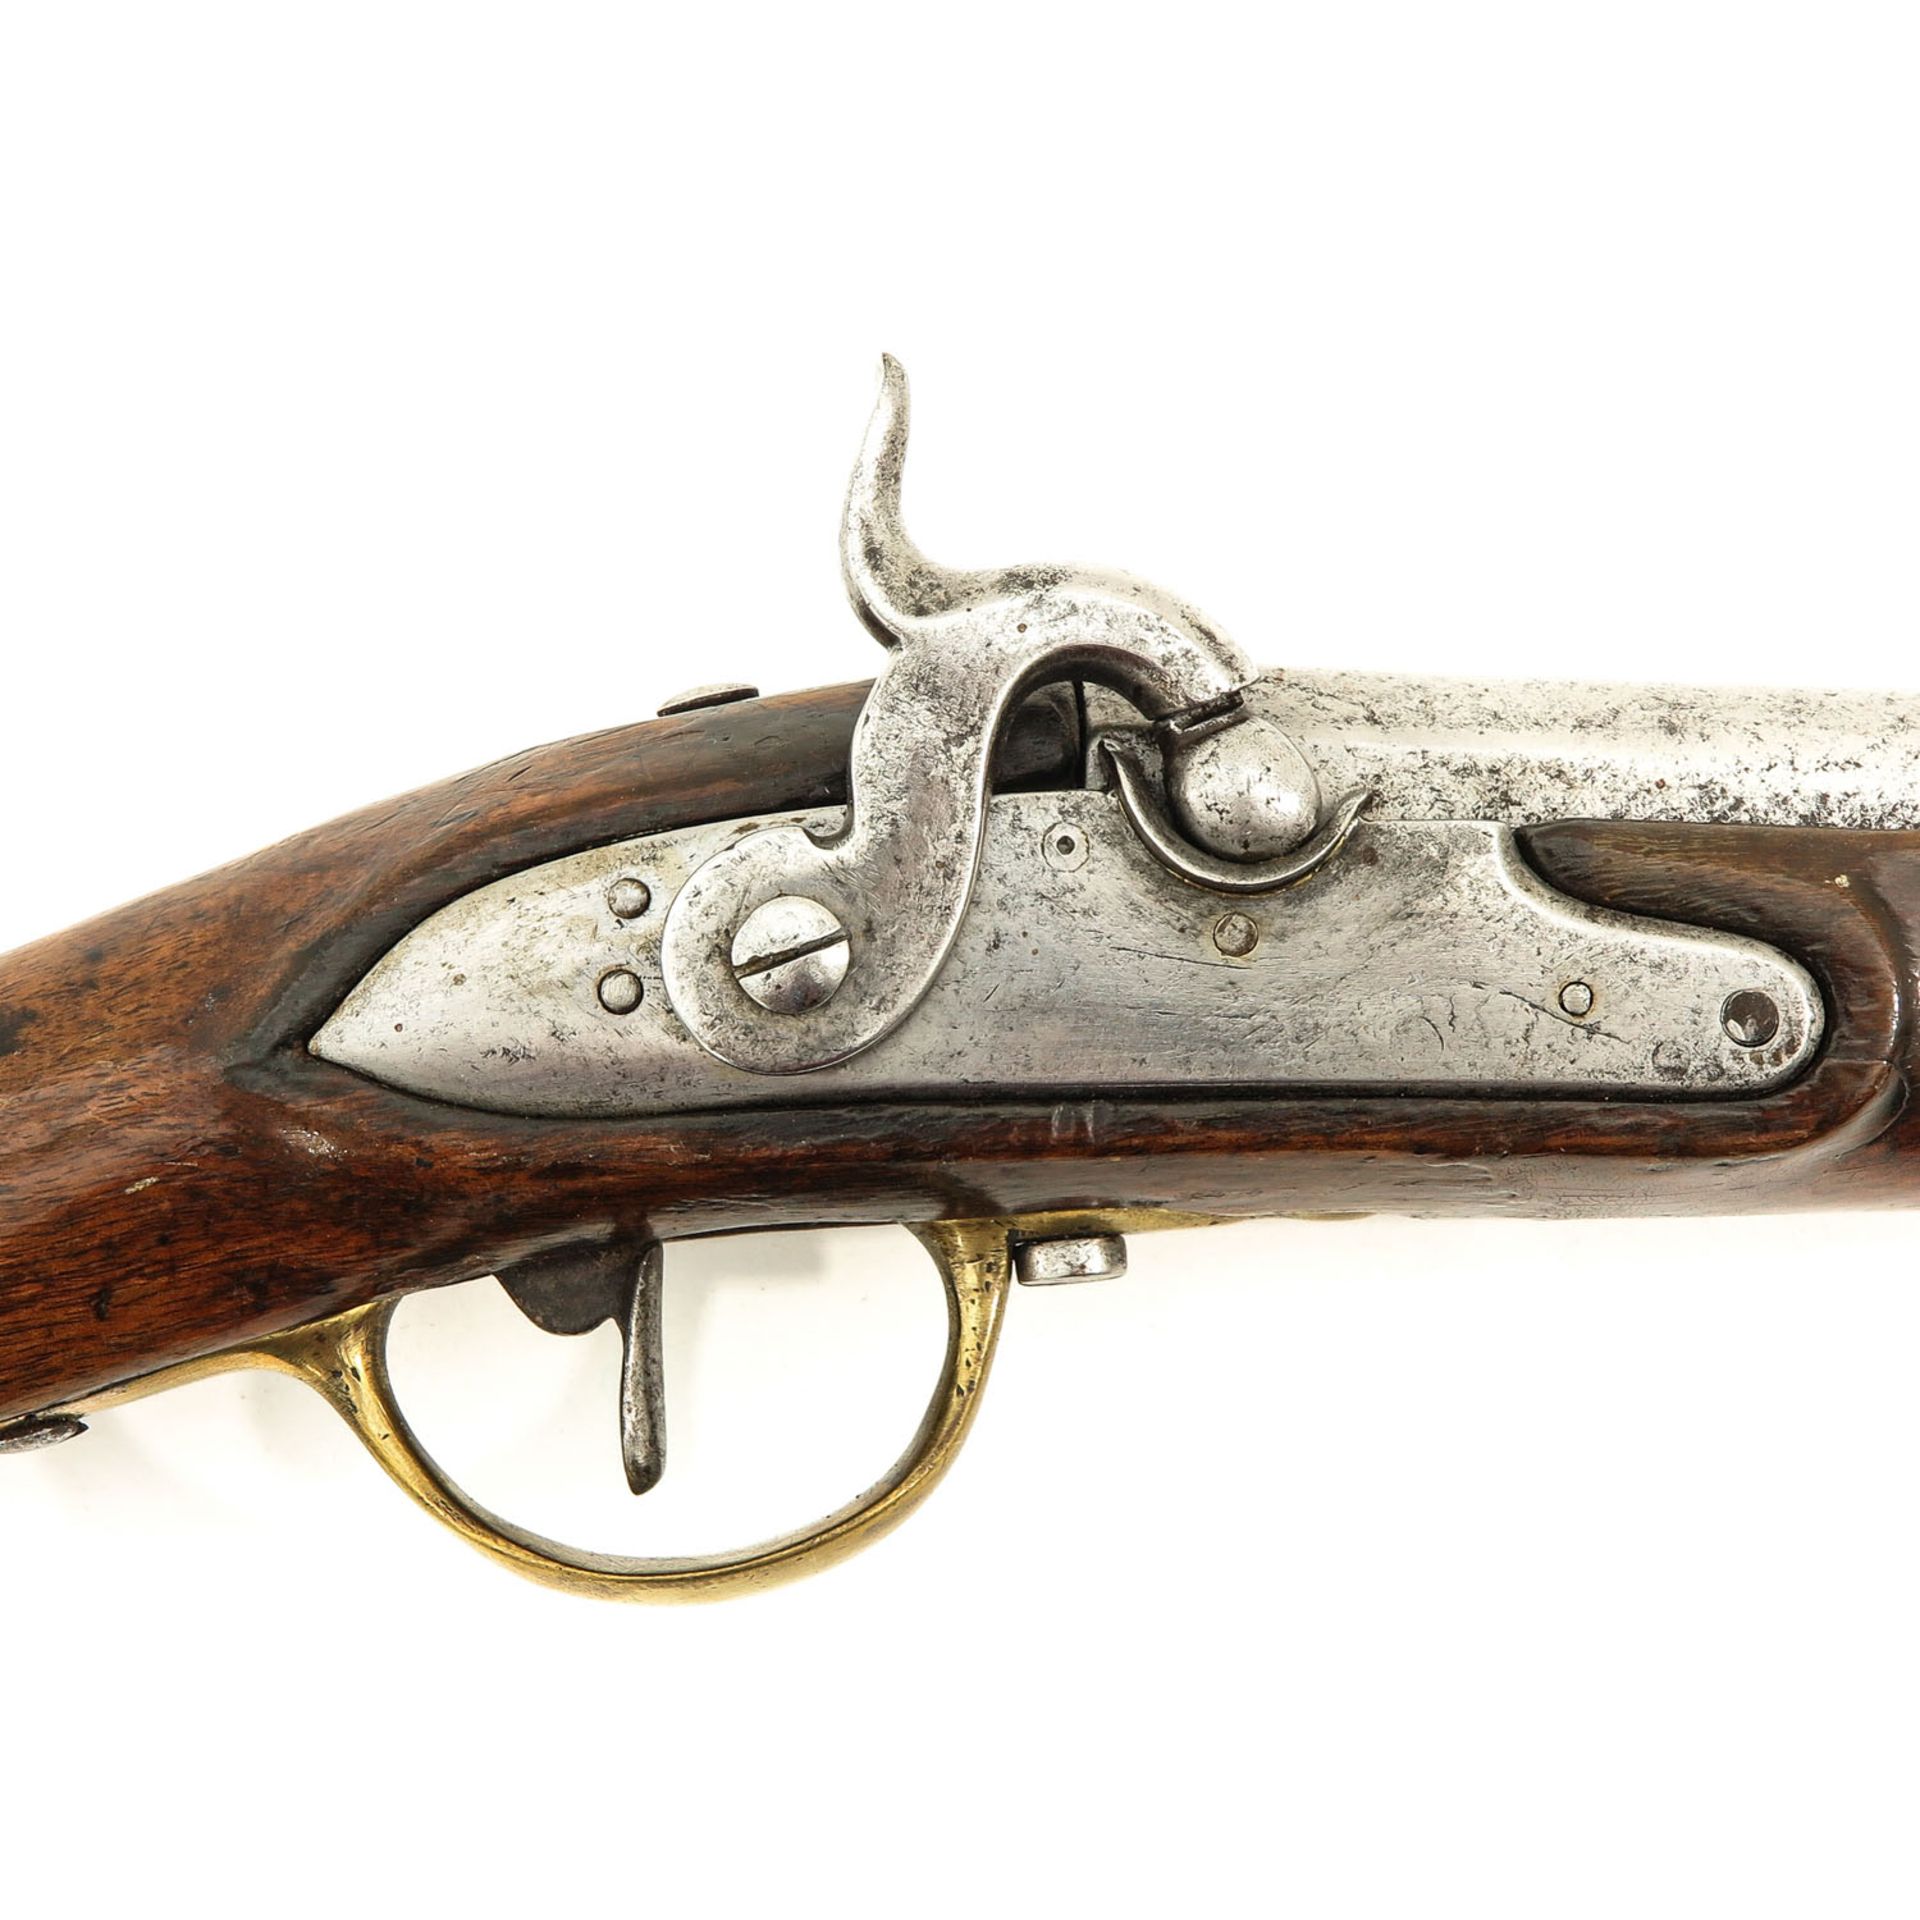 An Antique Belgium Carbine - Image 3 of 8